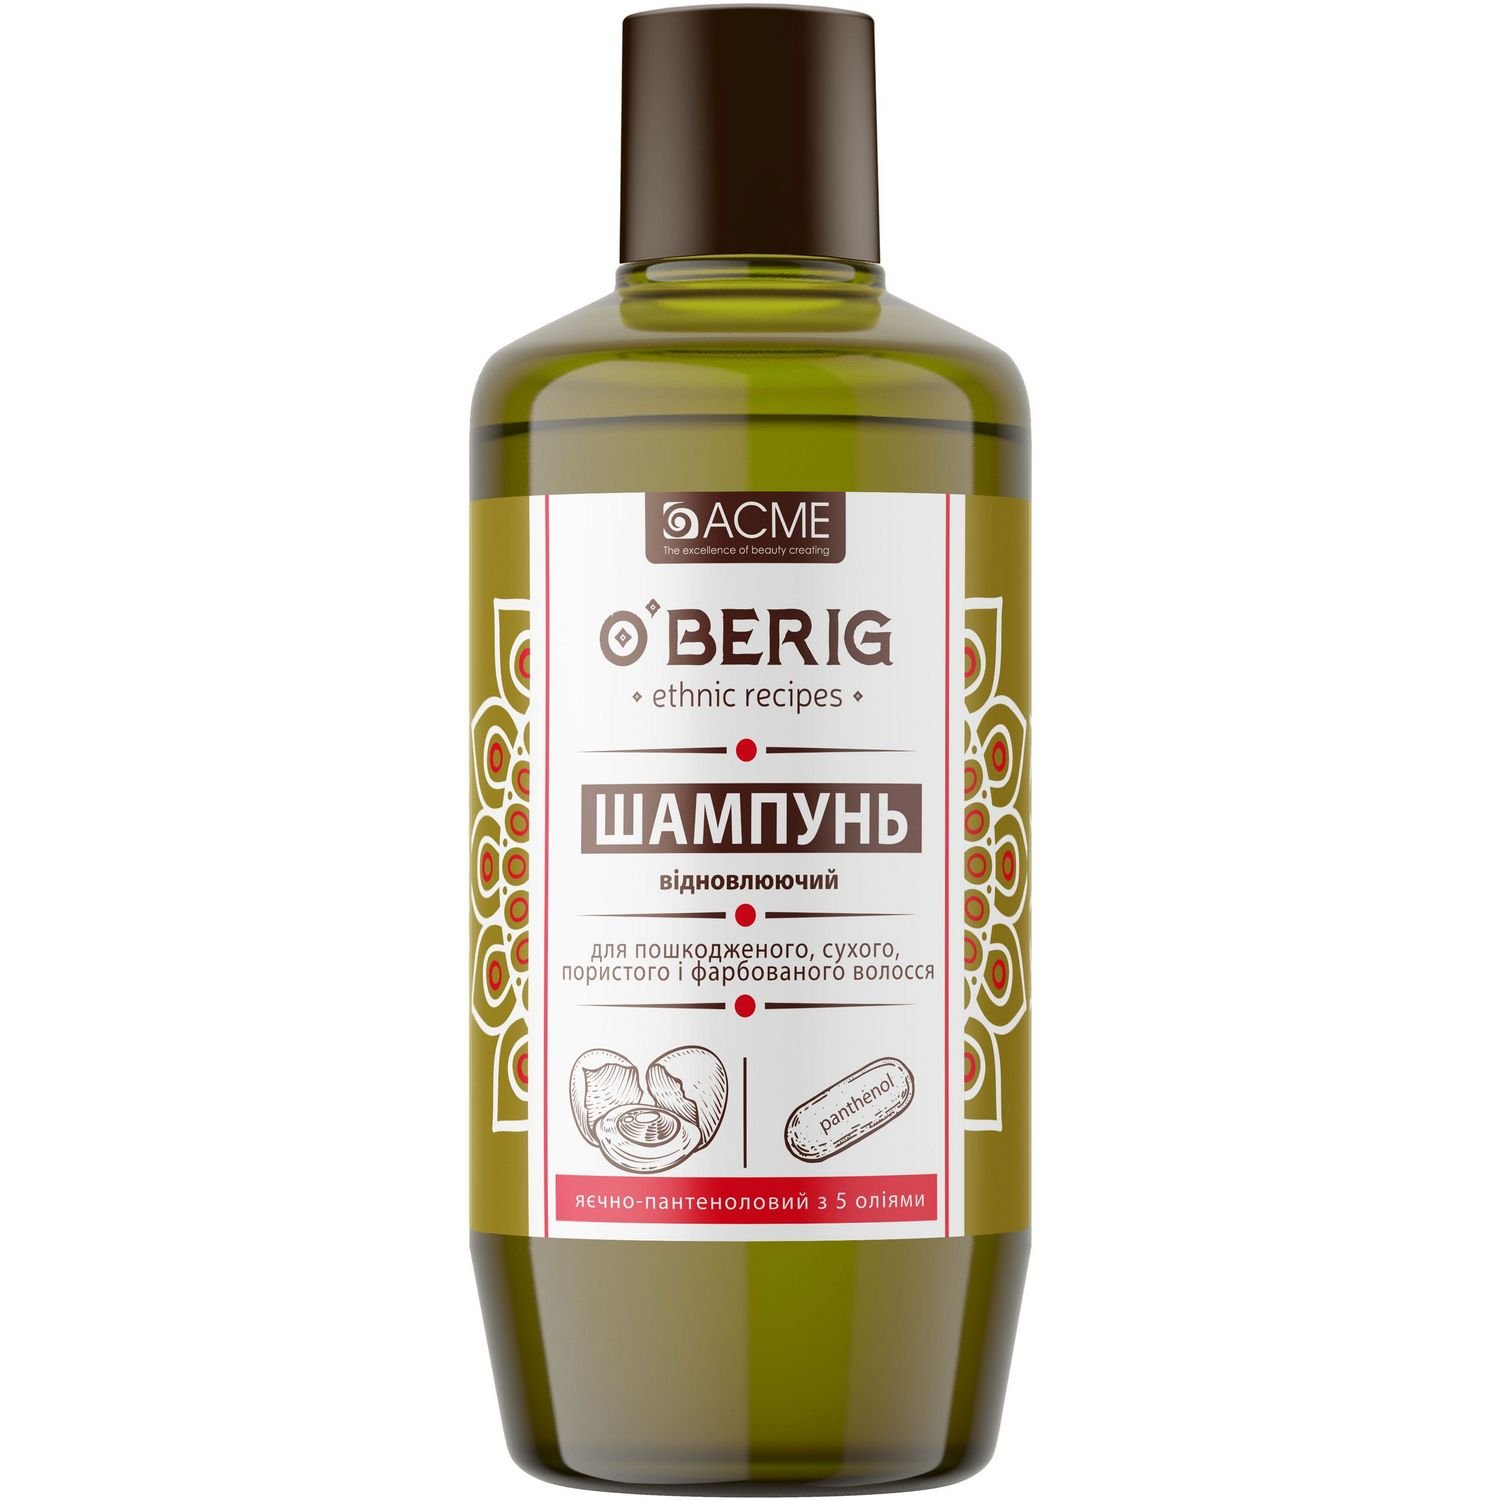 Олія-шампунь O'Berig Яєчно-пантеноловий з 5 оліями, для пошкодженного, сухого, пористого та фарбованого волосся, 500 мл - фото 1